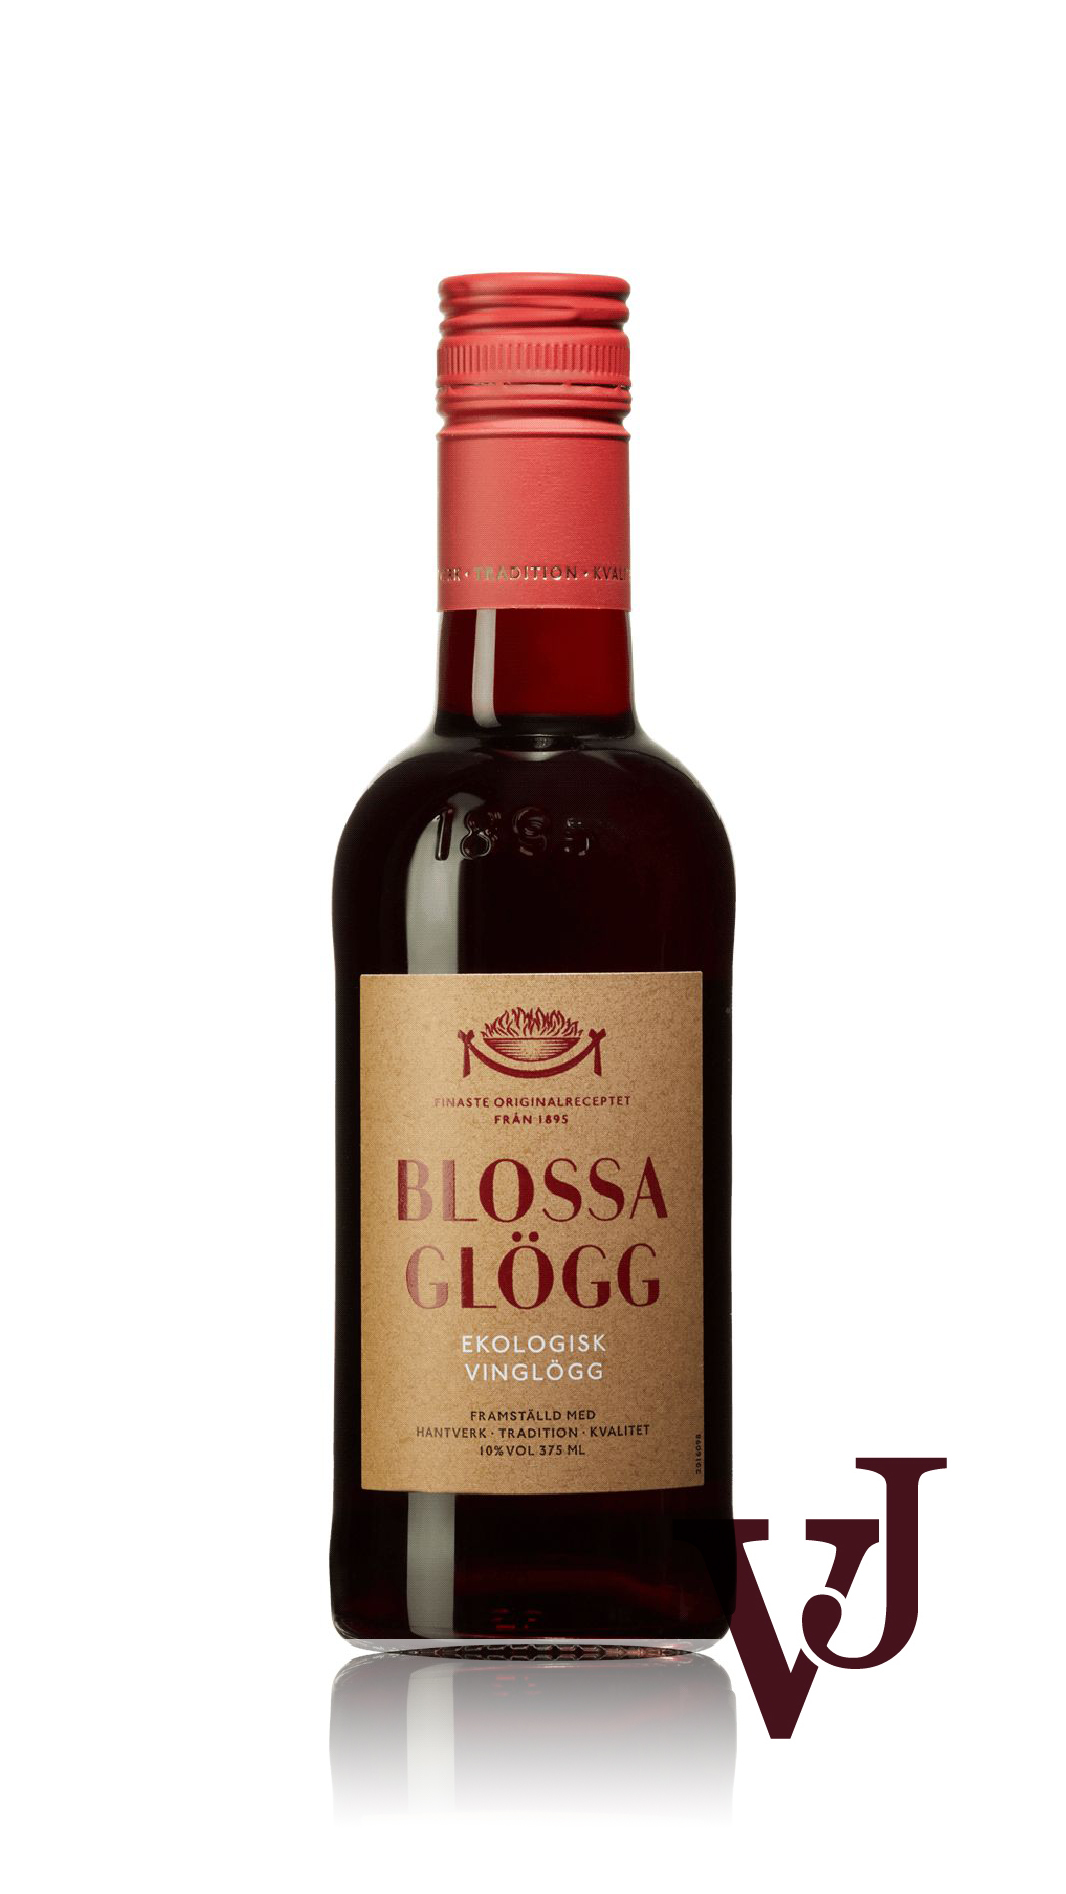 Övrigt vin - Blossa Ekologisk vinglögg röd artikel nummer 9016802 från producenten Altia från området Finland